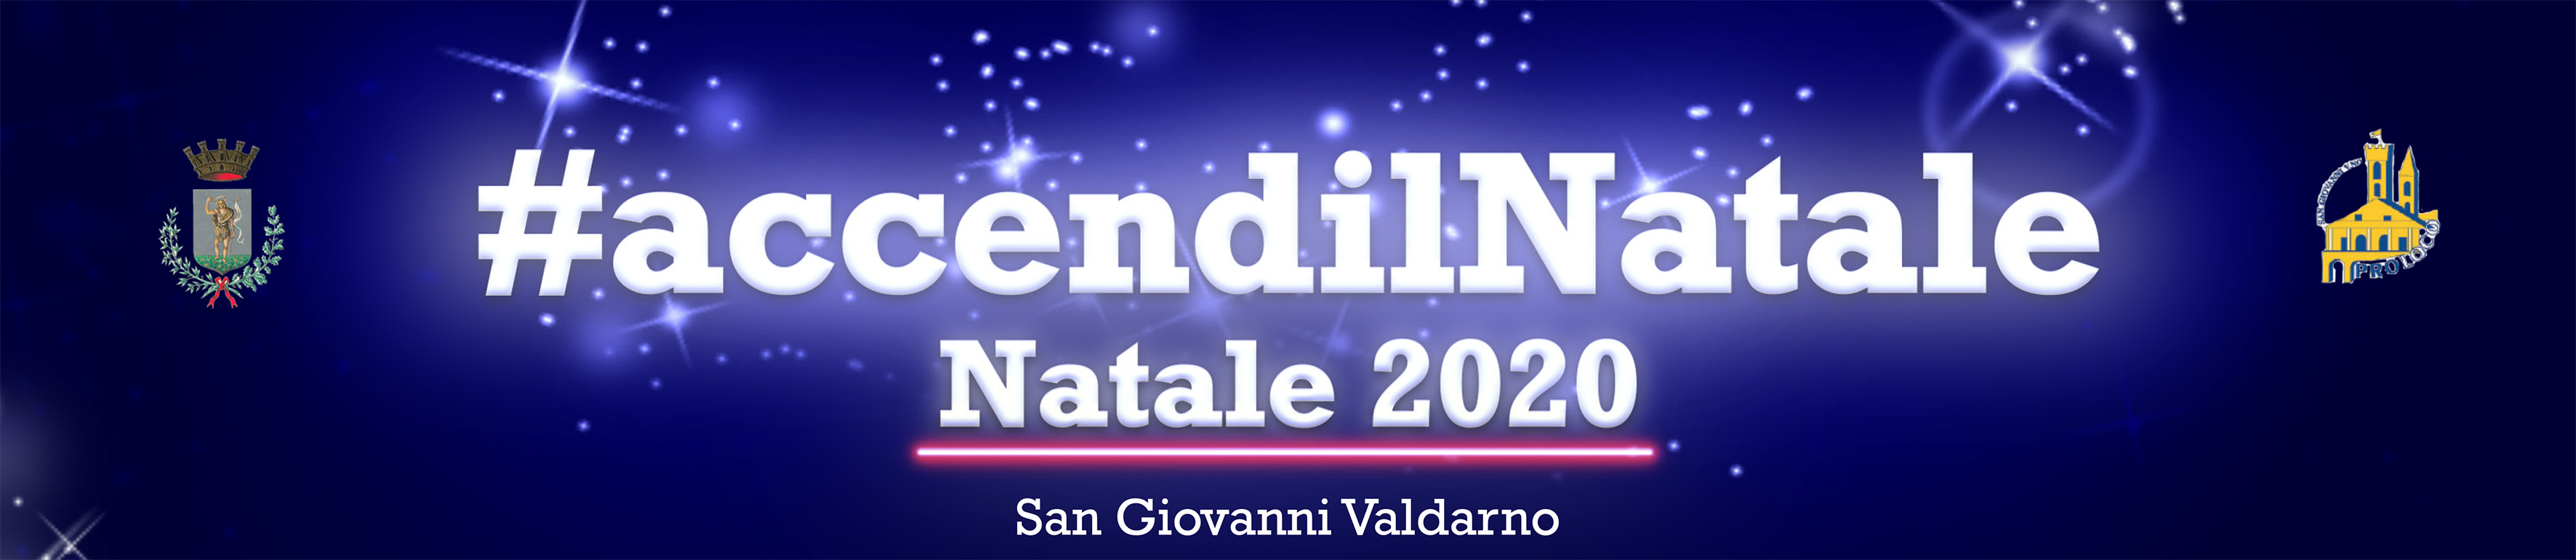 #accendilNatale – Natale 2020 San Giovanni Valdarno